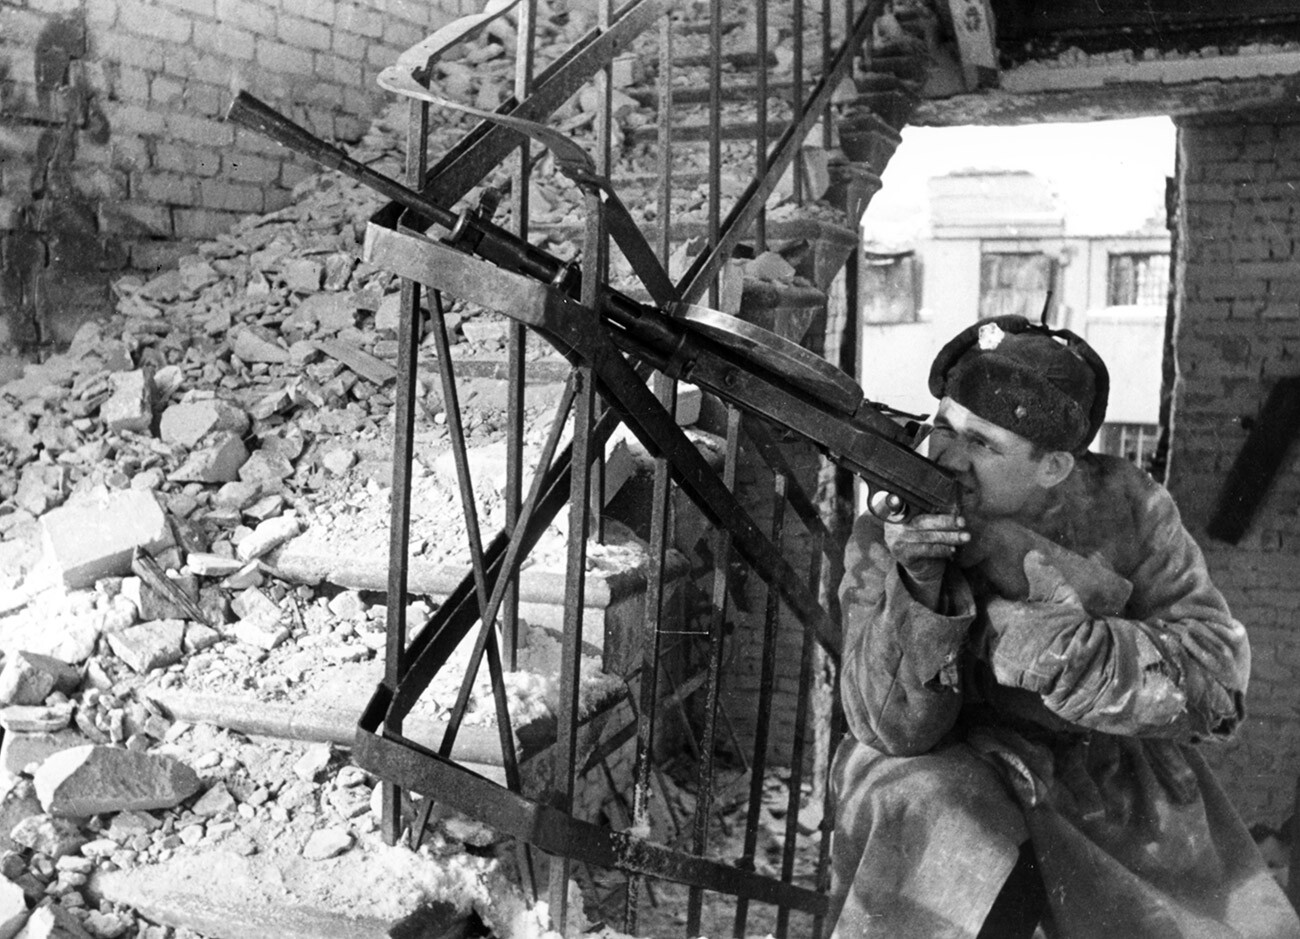 Soviet soldier in Stalingrad.